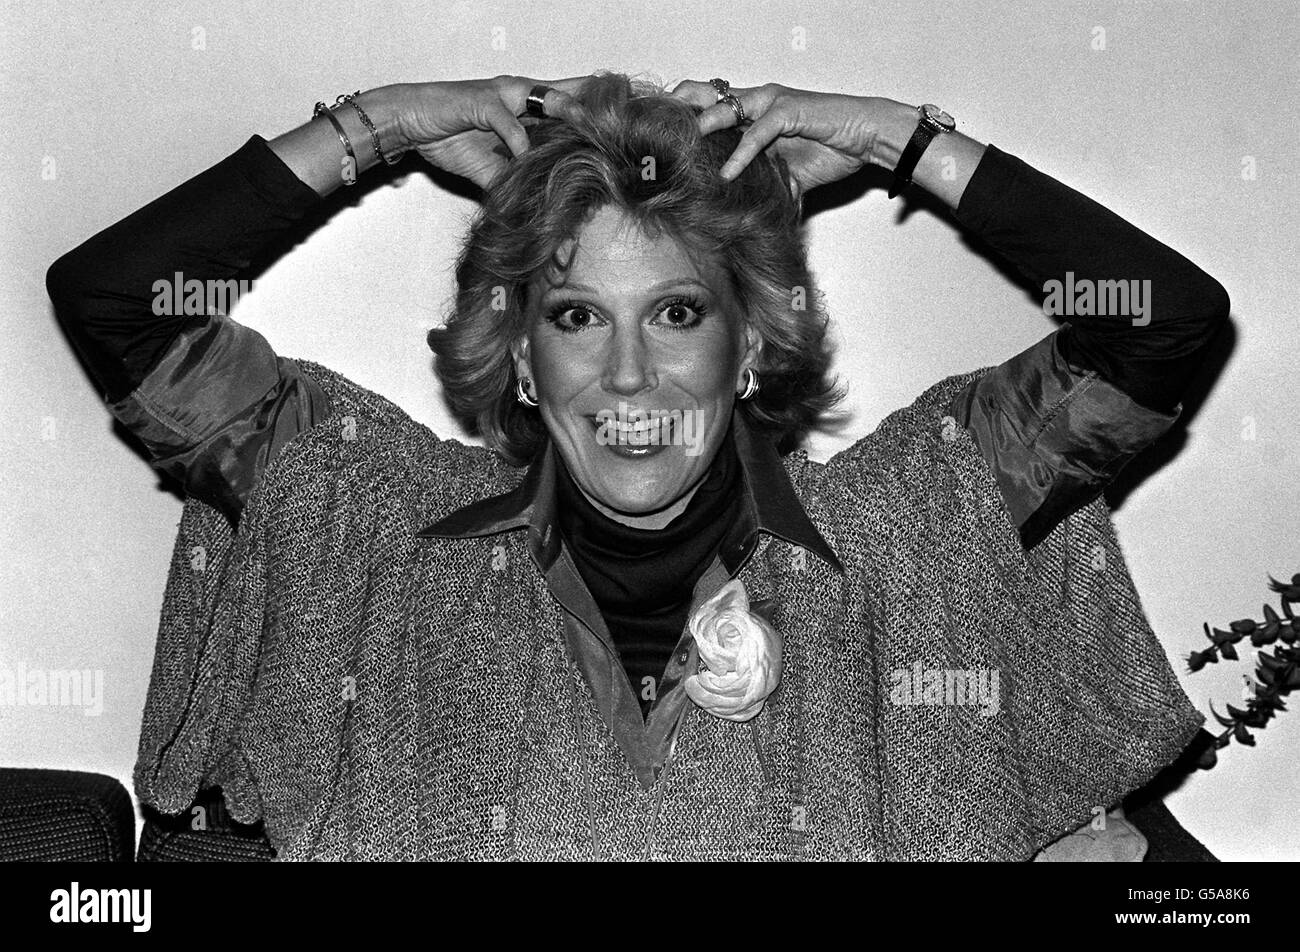 DUSTY SPRINGFIELD 1978: Dusty Springfield come si pone per una sbarria di fotografi al Savoy Hotel a Londra. Dusty, che ora vive a Los Angeles, sta cercando di fare una rimonta dopo quasi 10 anni di assenza dalle classifiche. È qui per promuovere il suo nuovo album 'IT Begins Again...'. Foto Stock